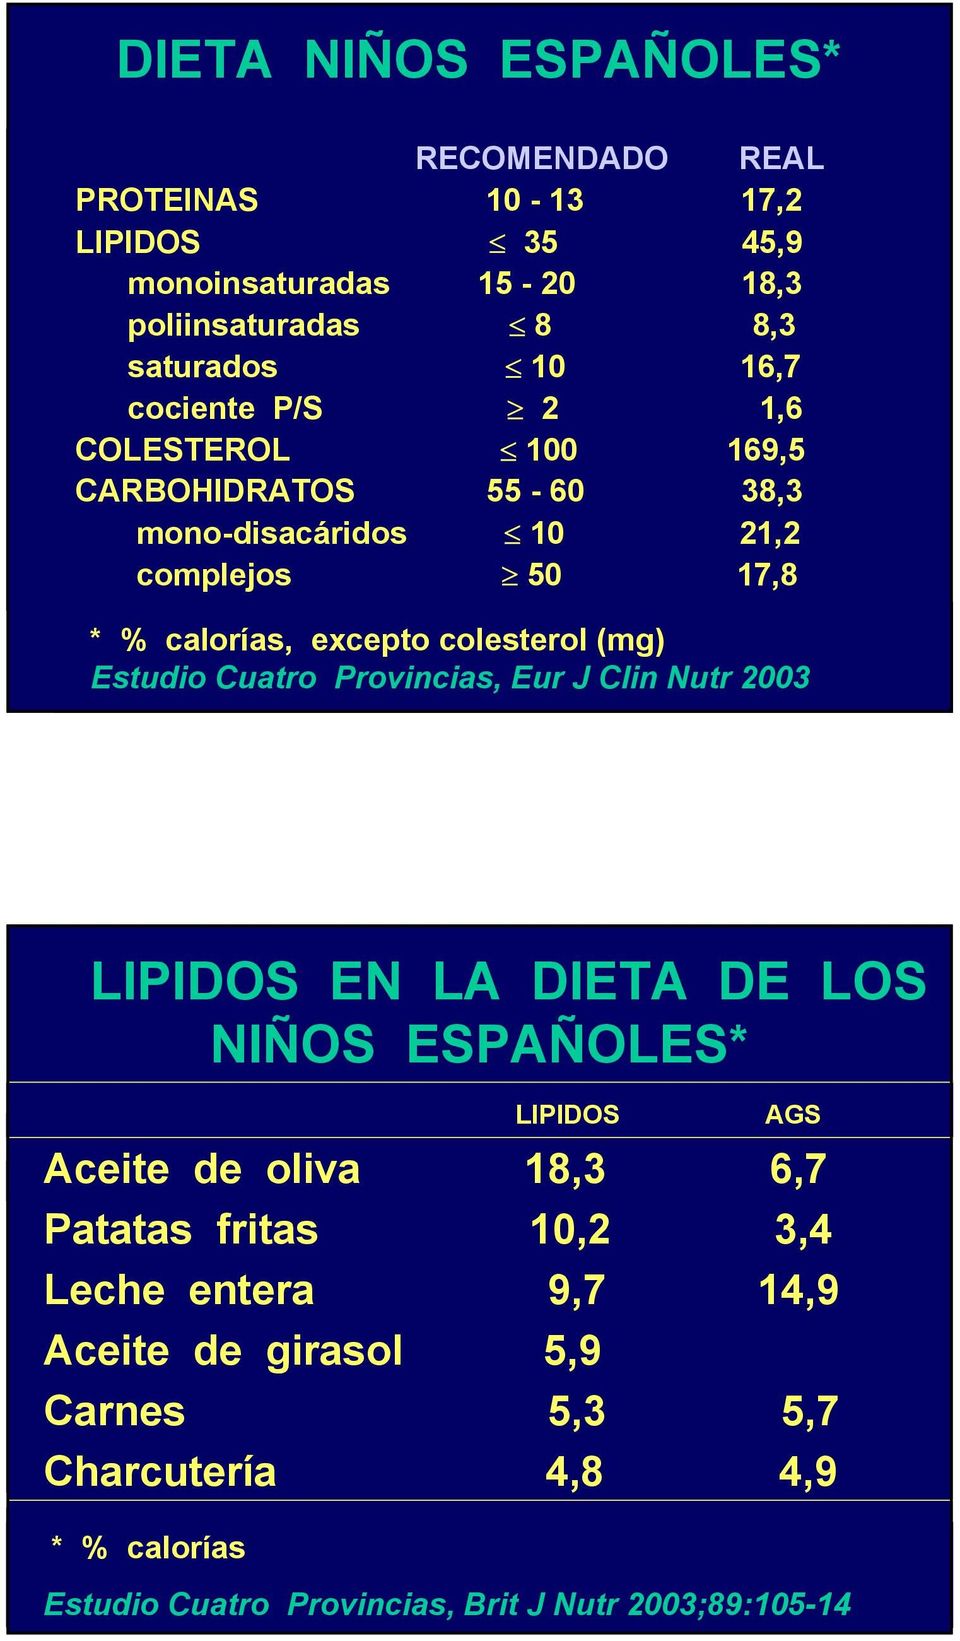 Estudio Cuatro Provincias, Eur J Clin Nutr 2003 LIPIDOS EN LA DIETA DE LOS NIÑOS ESPAÑOLES* LIPIDOS AGS Aceite de oliva 18,3 6,7 Patatas fritas